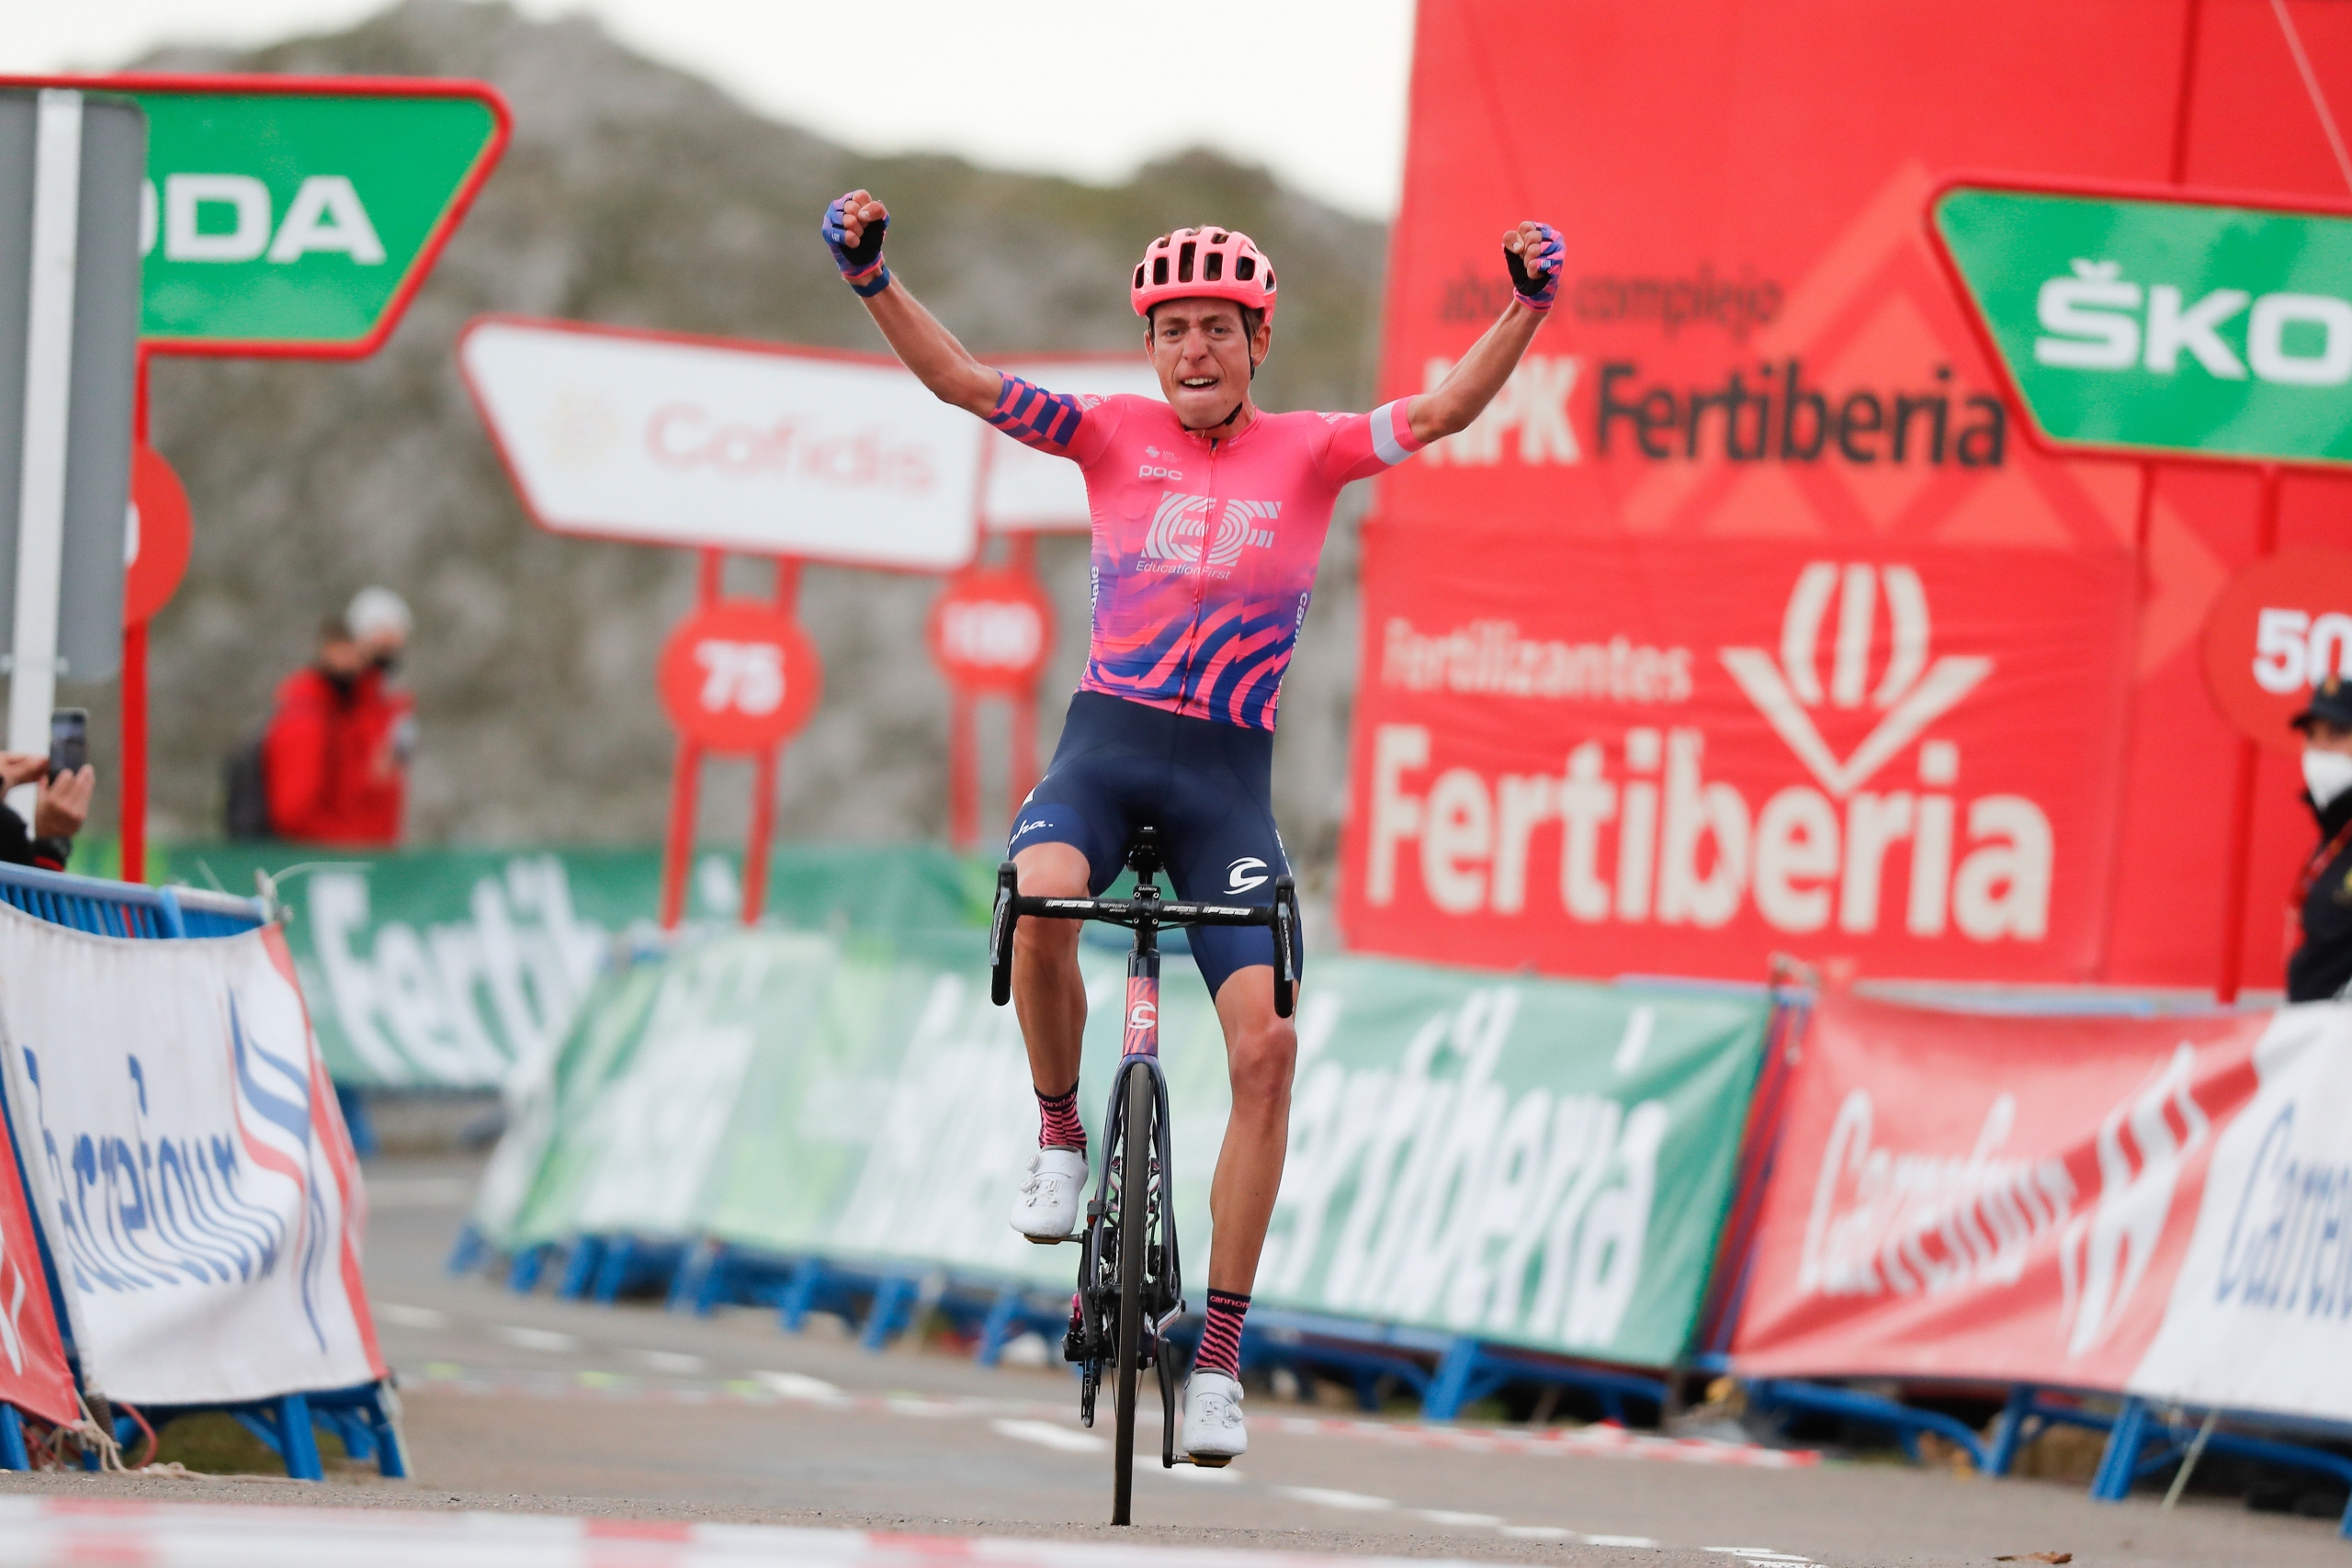 Vuelta a Burgos 2021: etap 5. Carthy na Lagunas de Neila, Landa zwycięzcą